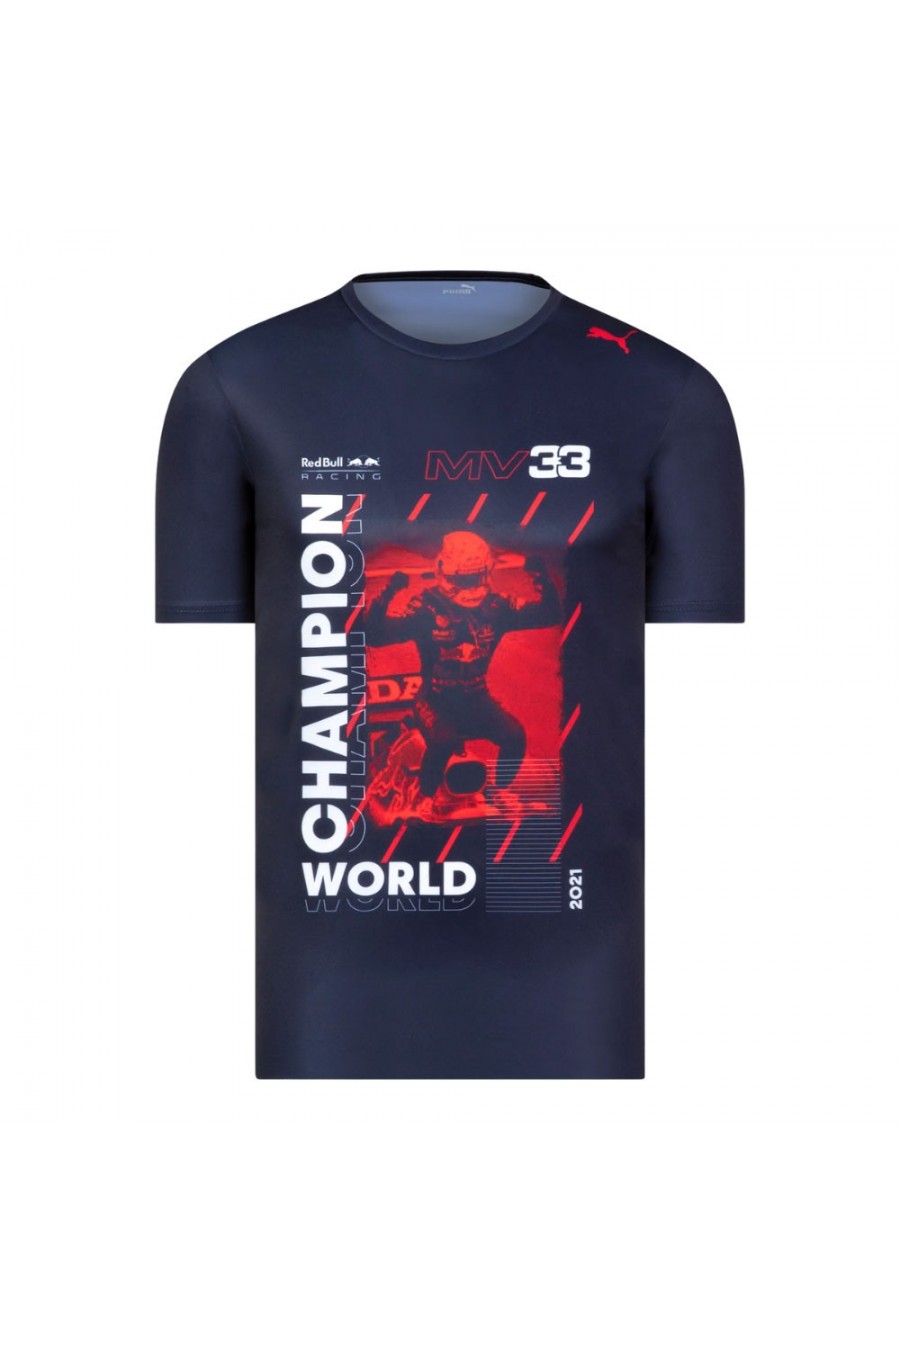 Reciteren Dhr leef ermee Max Verstappen 2021 F1 Championship T-shirt